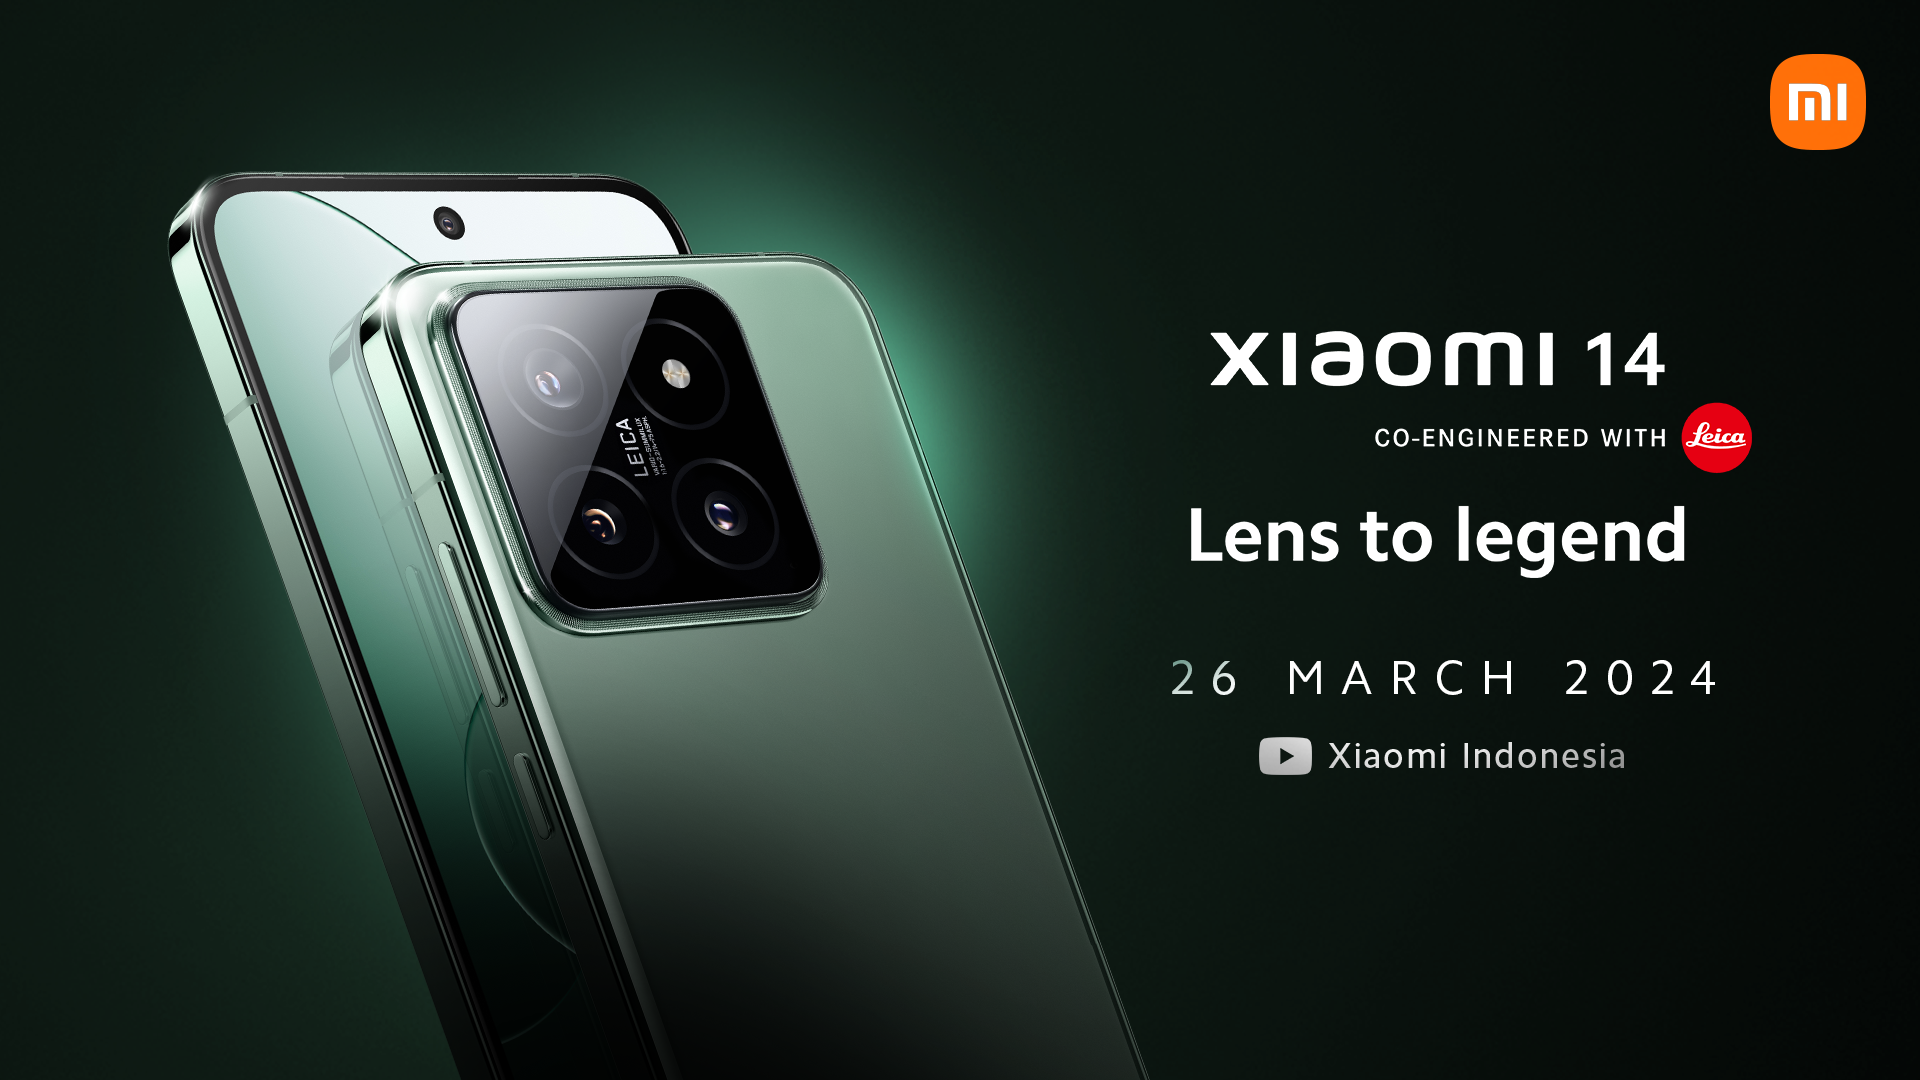 Xiaomi 14 Dipastikan Meluncur di Indonesia Akhir Maret 2024, Bawa Teknologi Fotografi Leica